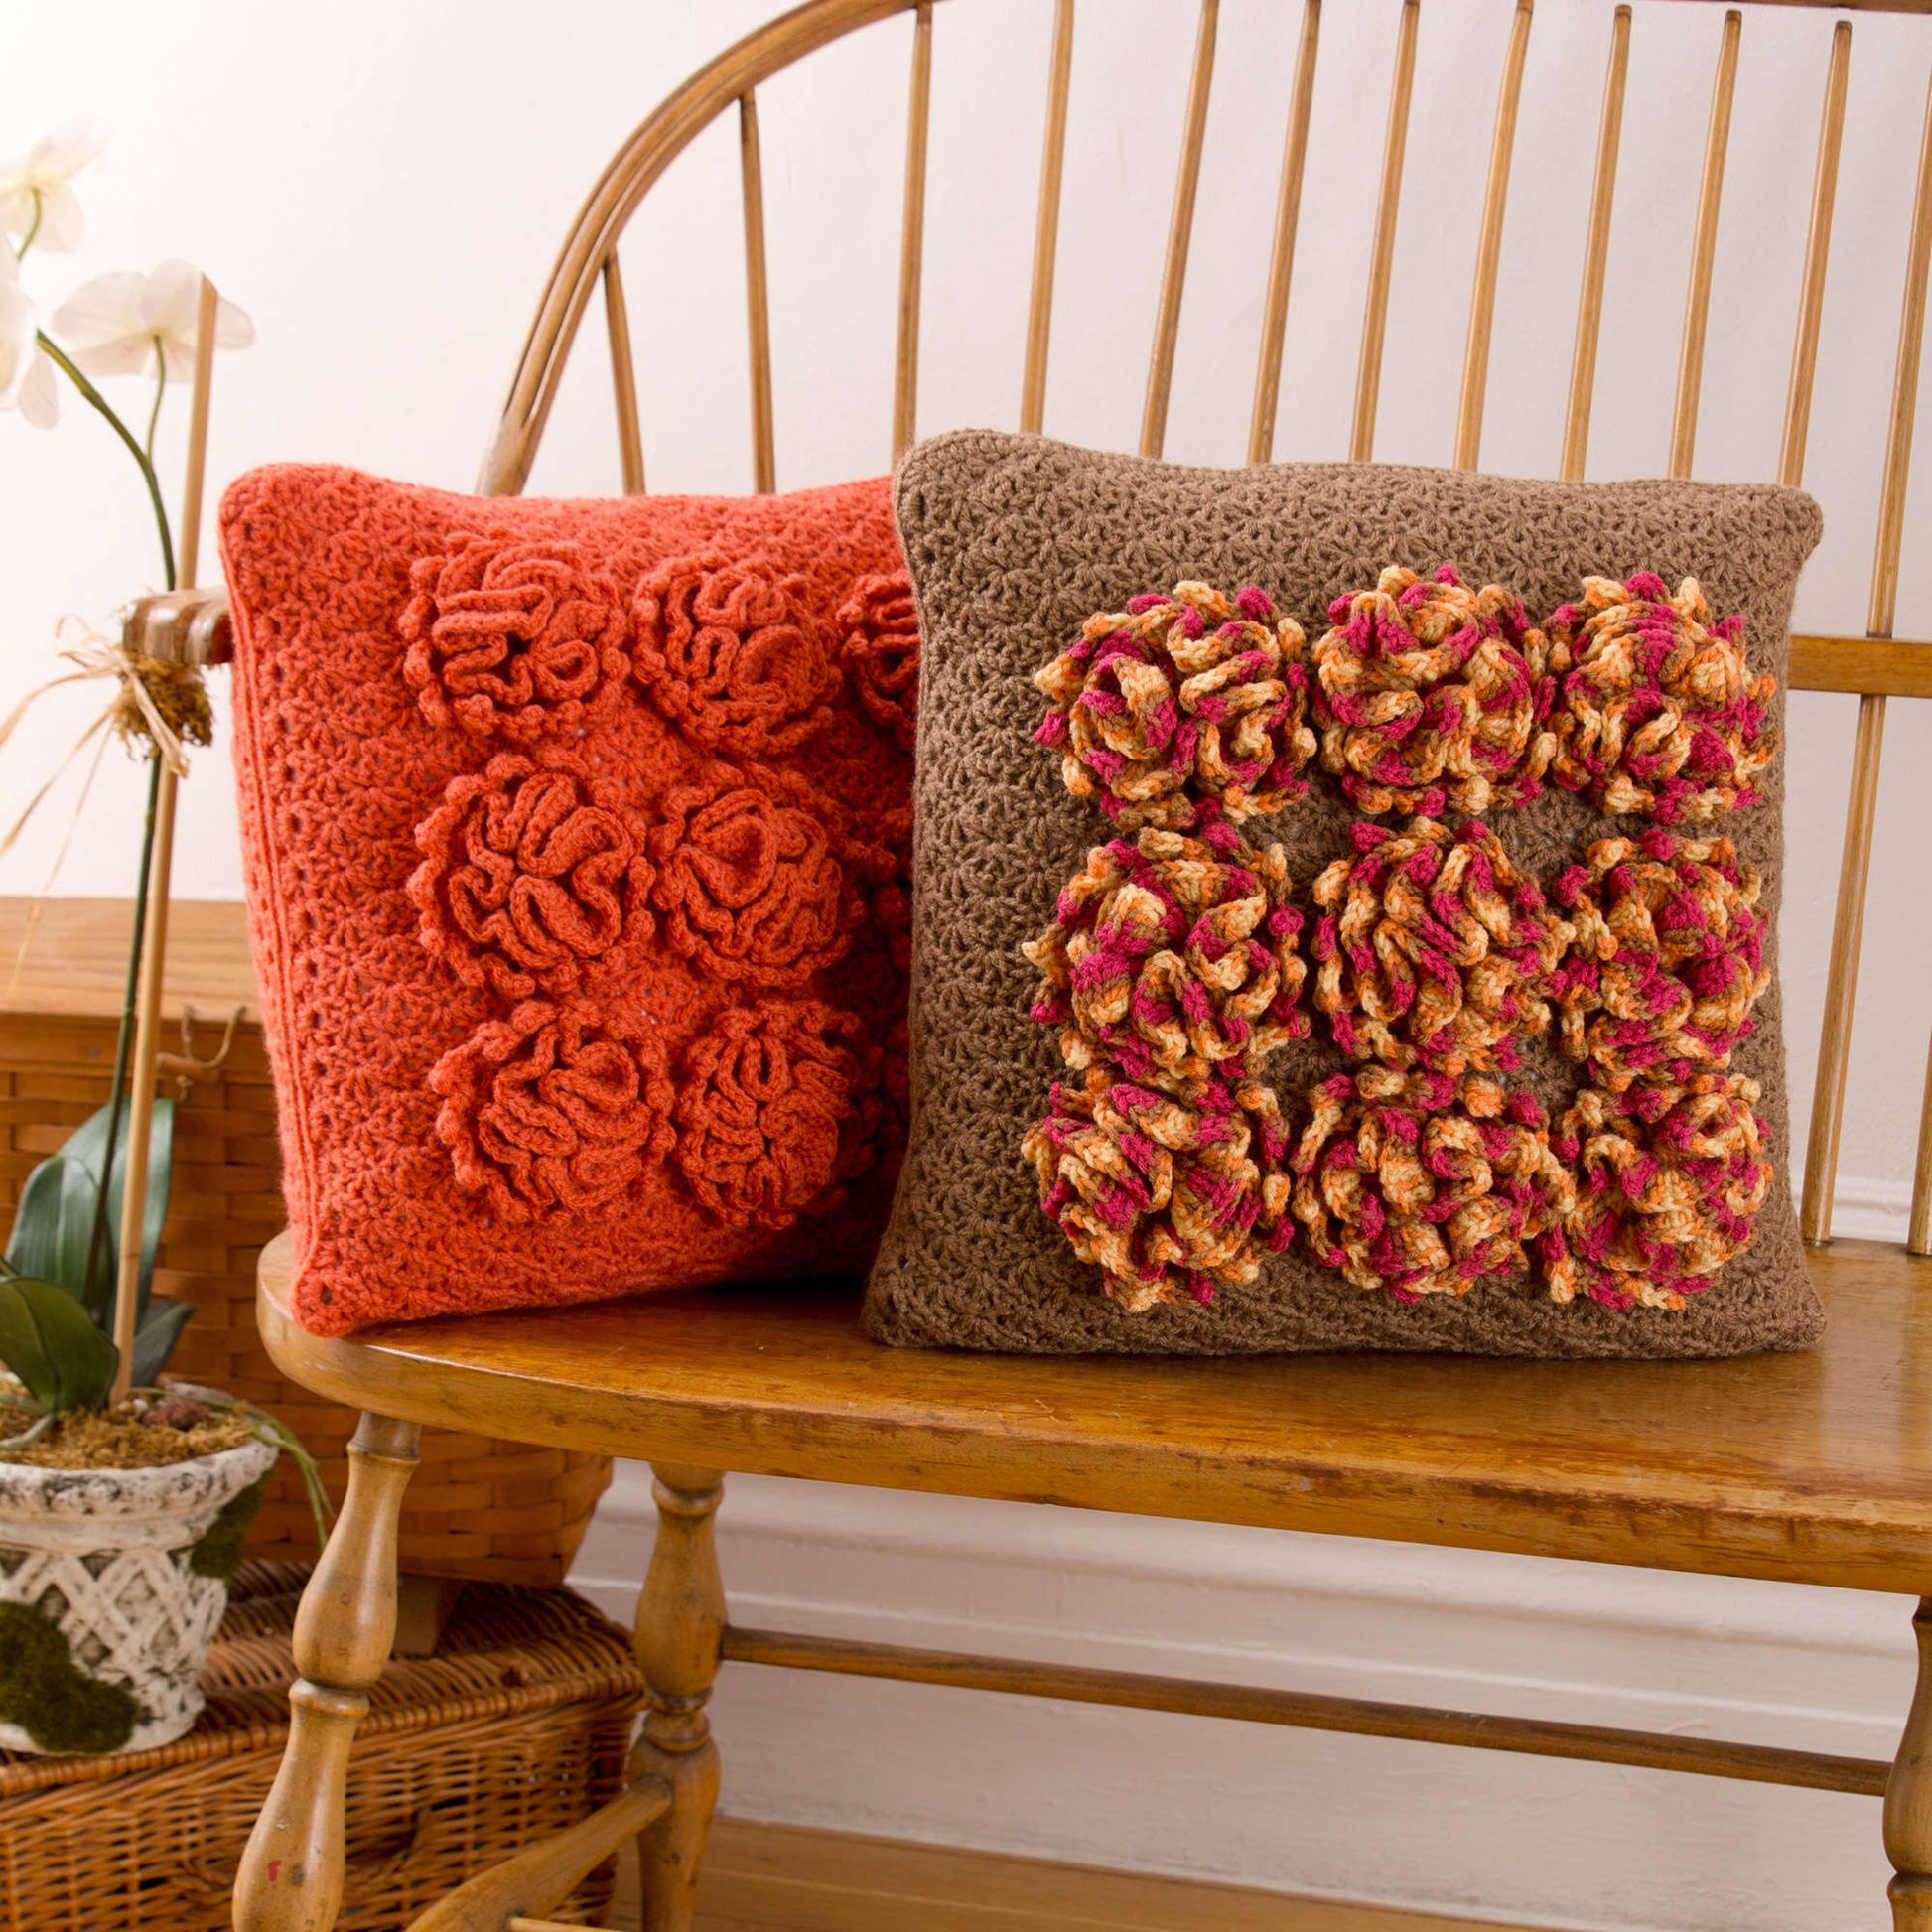 Free Red Heart Dahlia Pillows Crochet Pattern